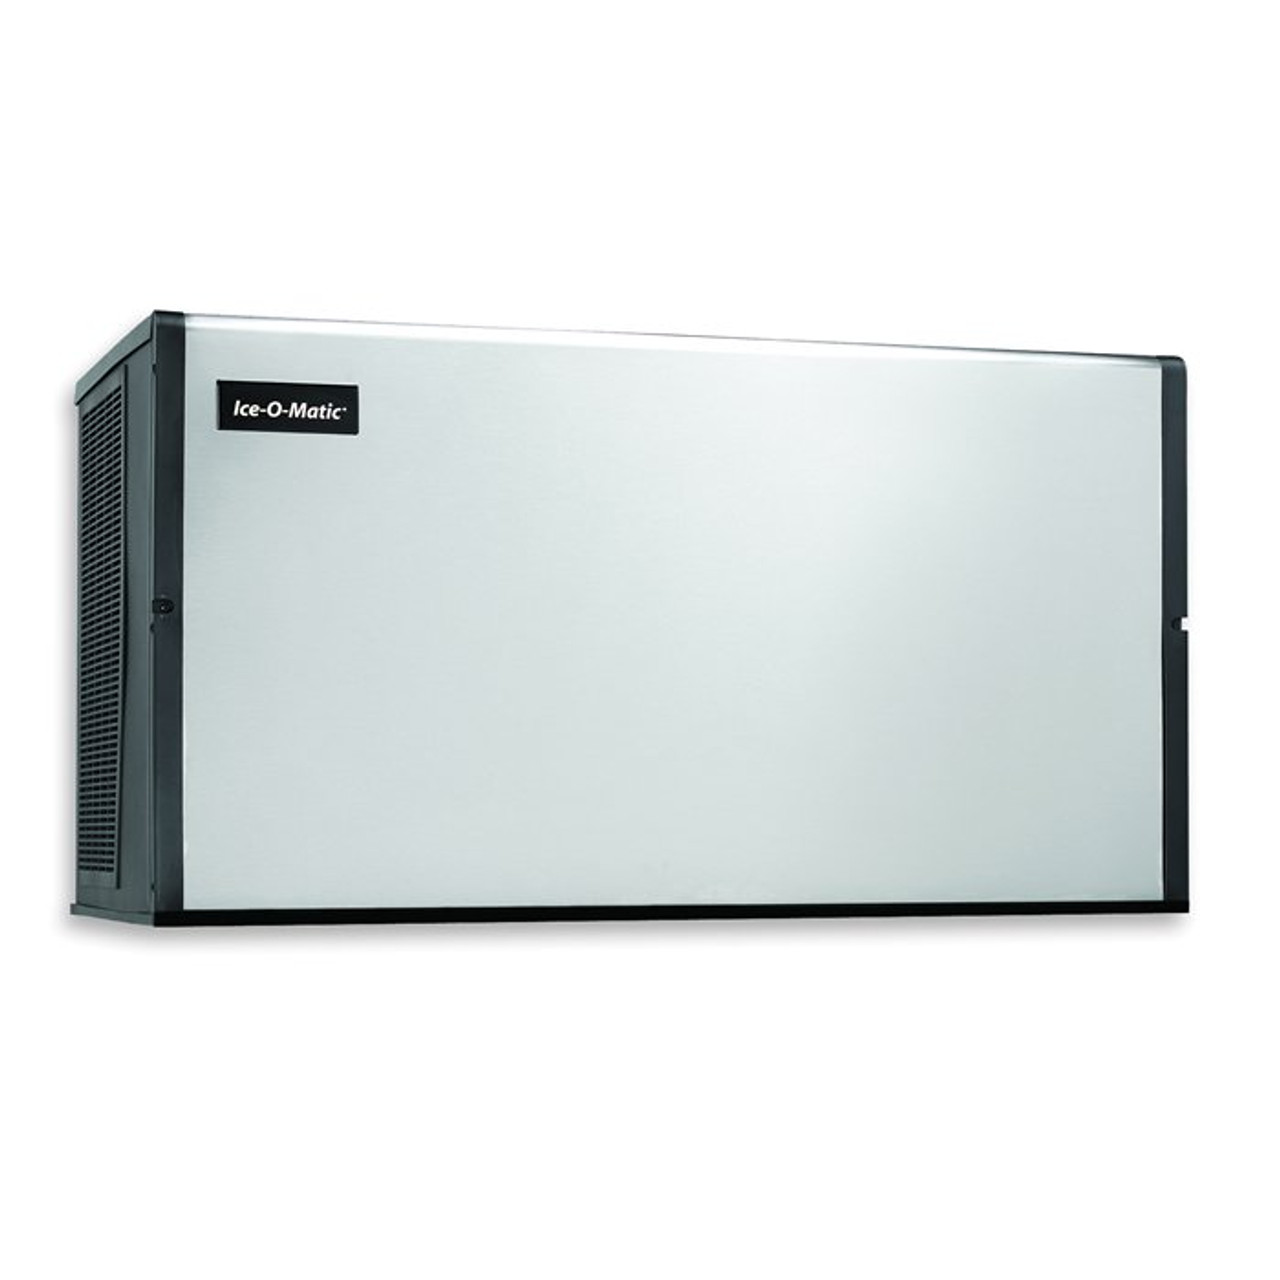 Ice-O-Matic Model B110PS - 854 lbs Ice Storage Bin - Best Price Guarantee!